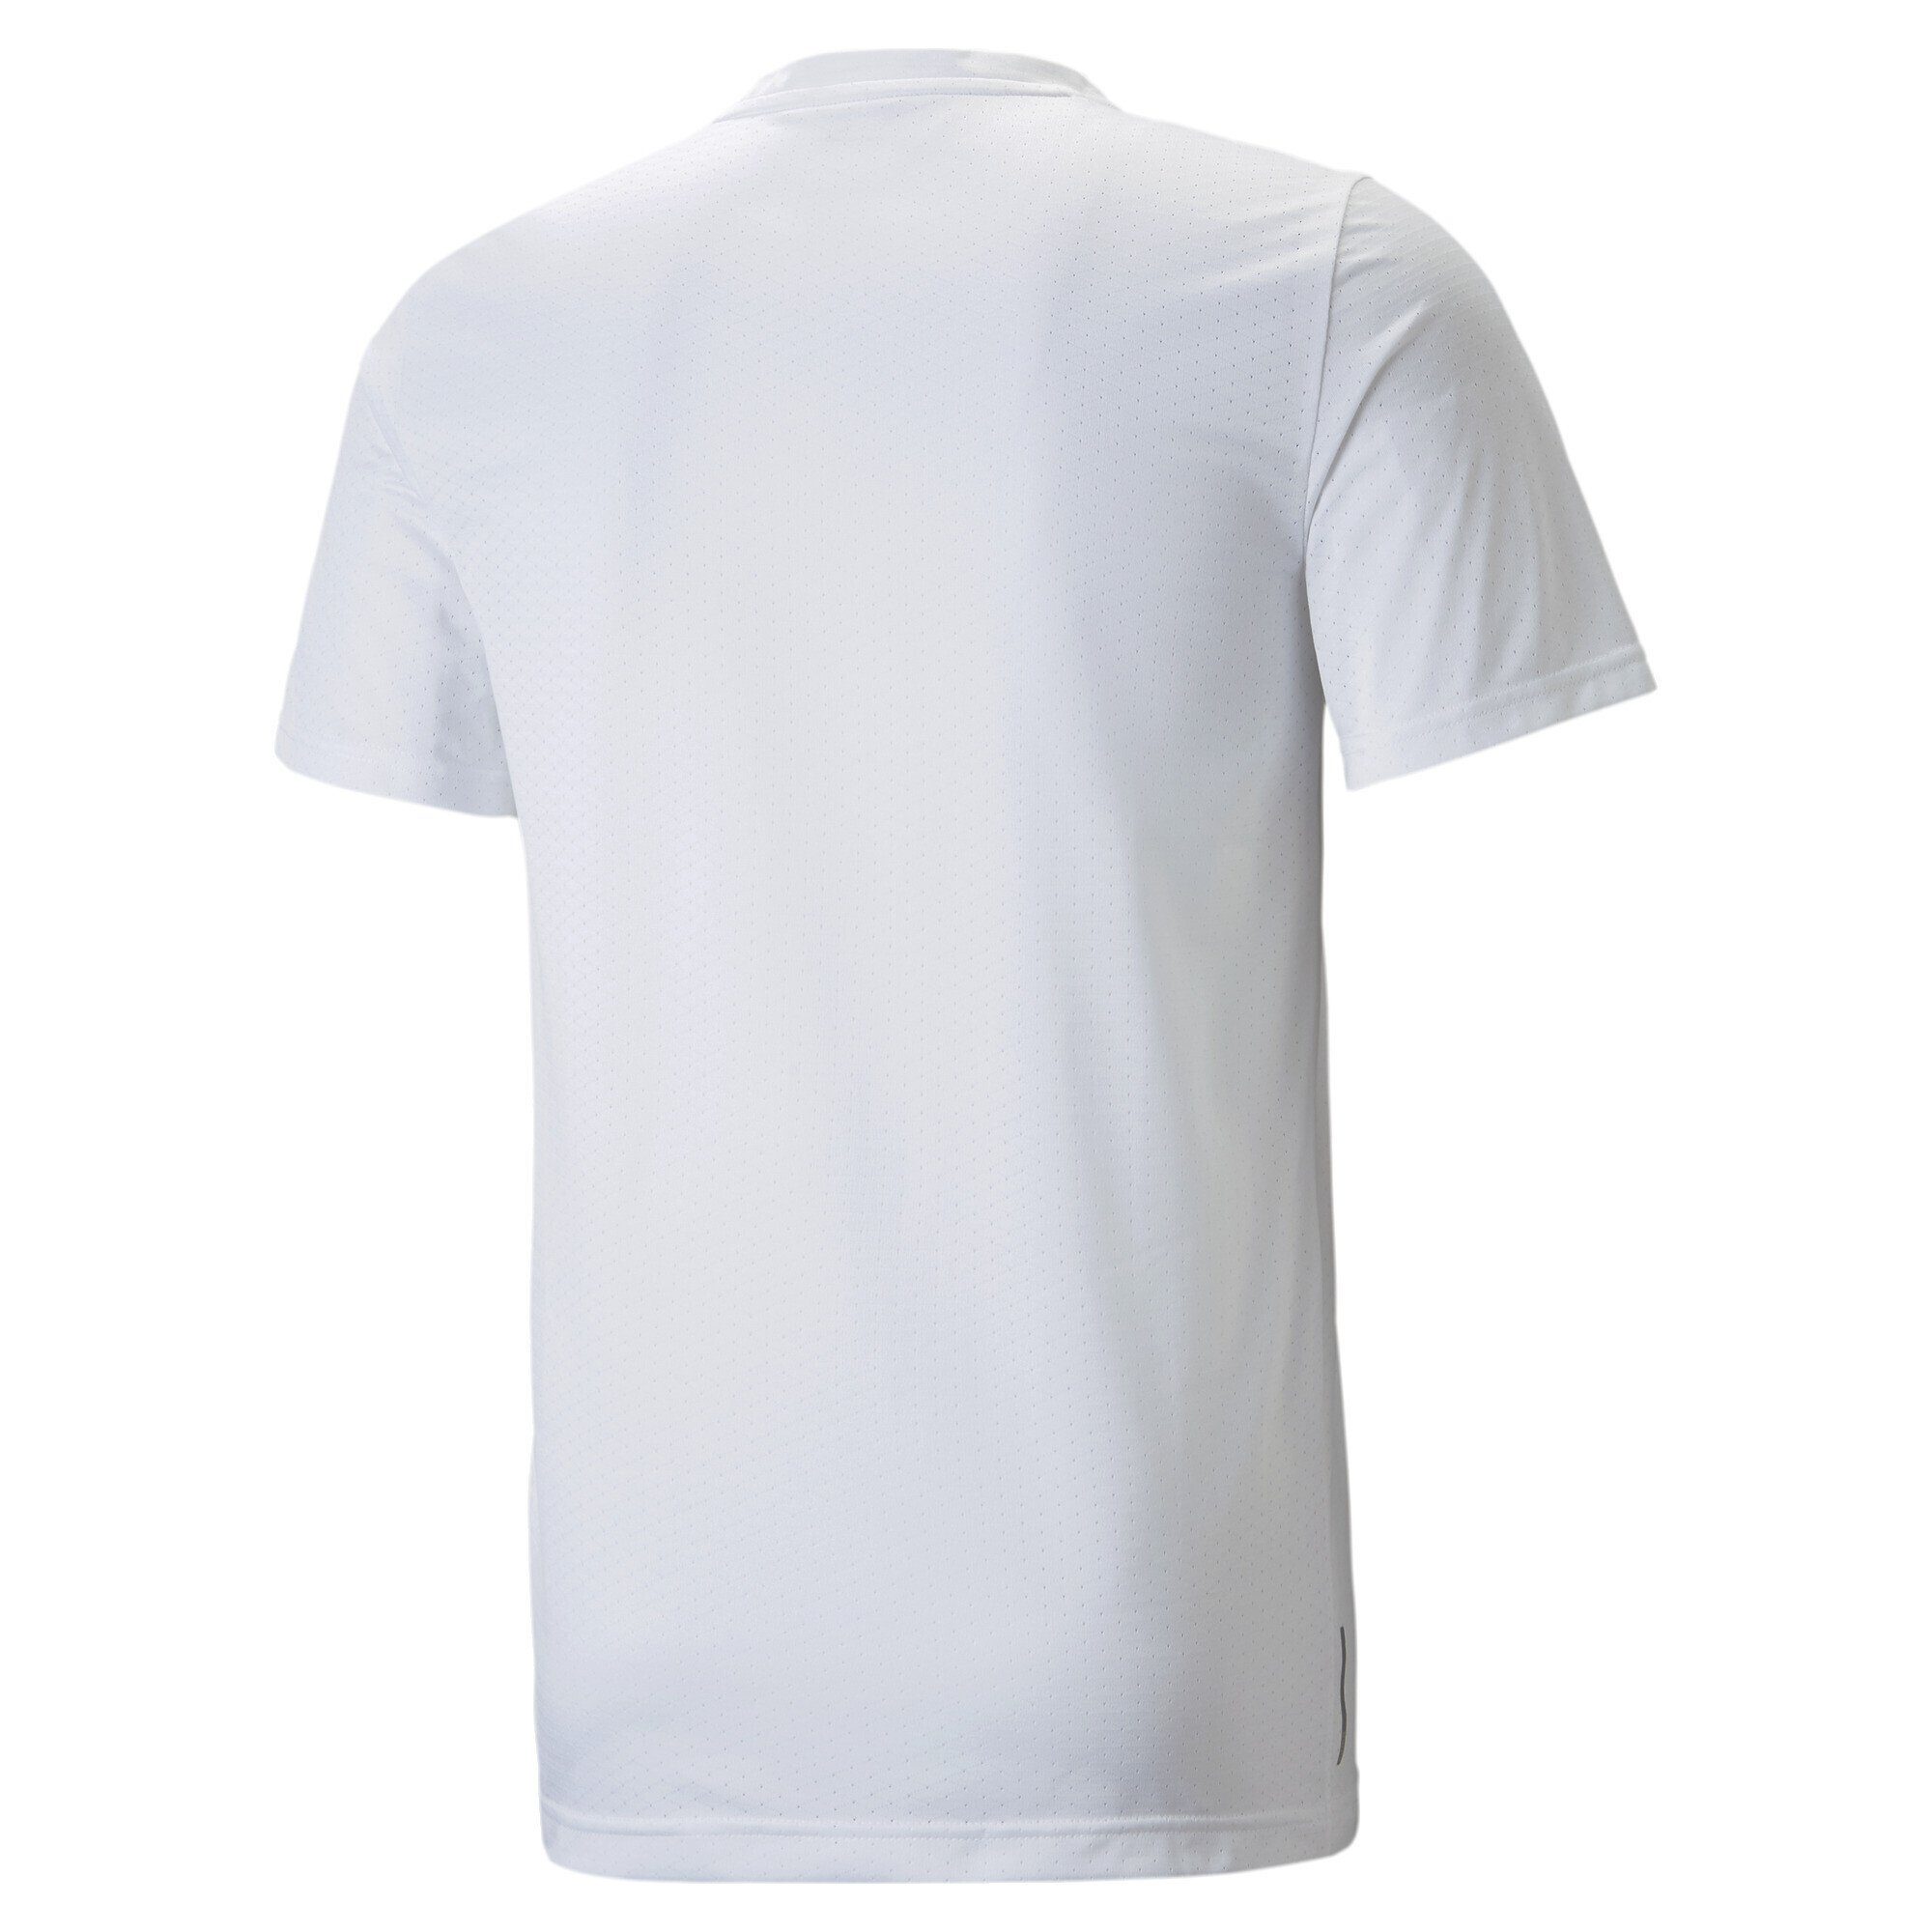 PUMA Trainingsshirt Favourite Blaster Trainingsshirt White Herren